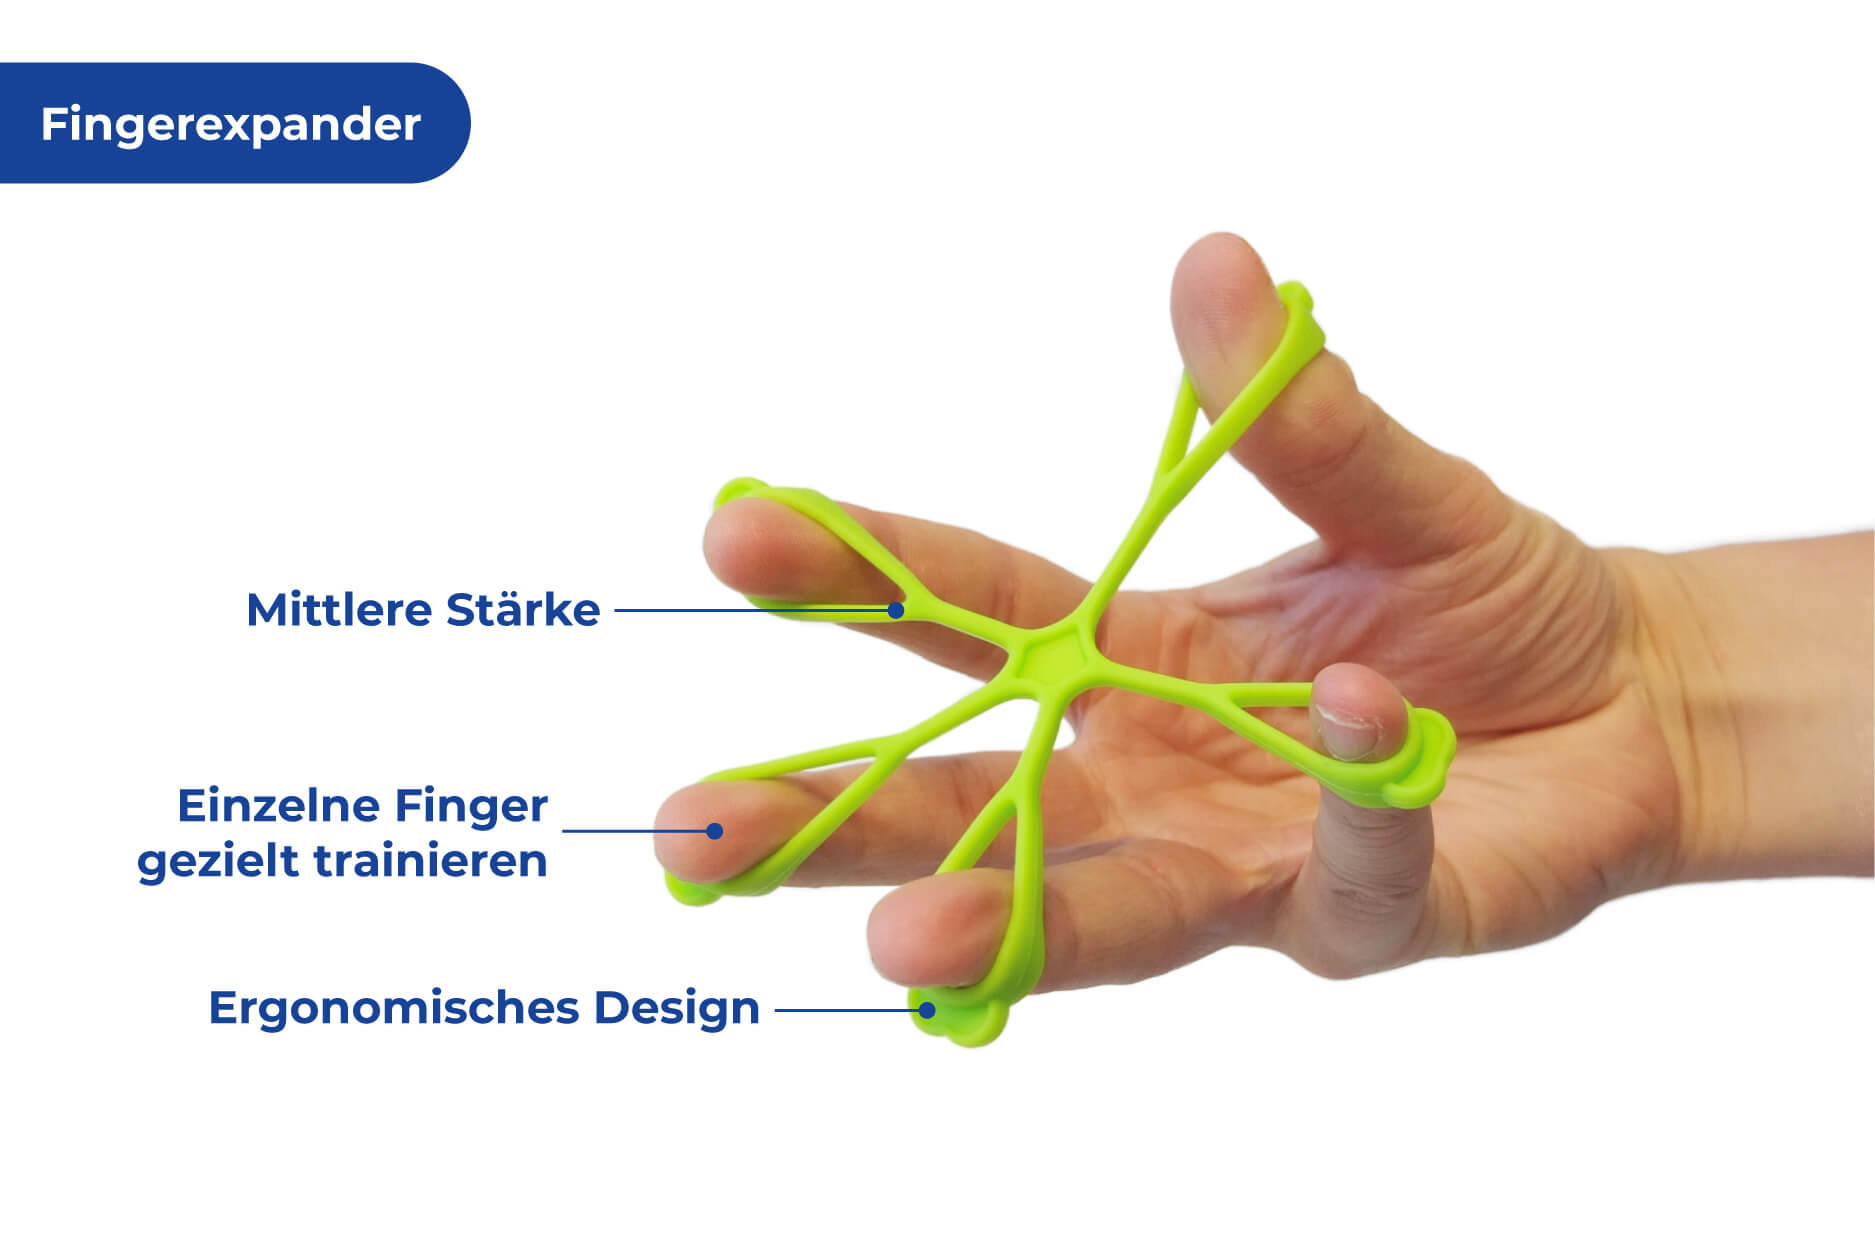 Hand-& Fingertrainings-Set für mehr Griffkraft und bessere Motorik